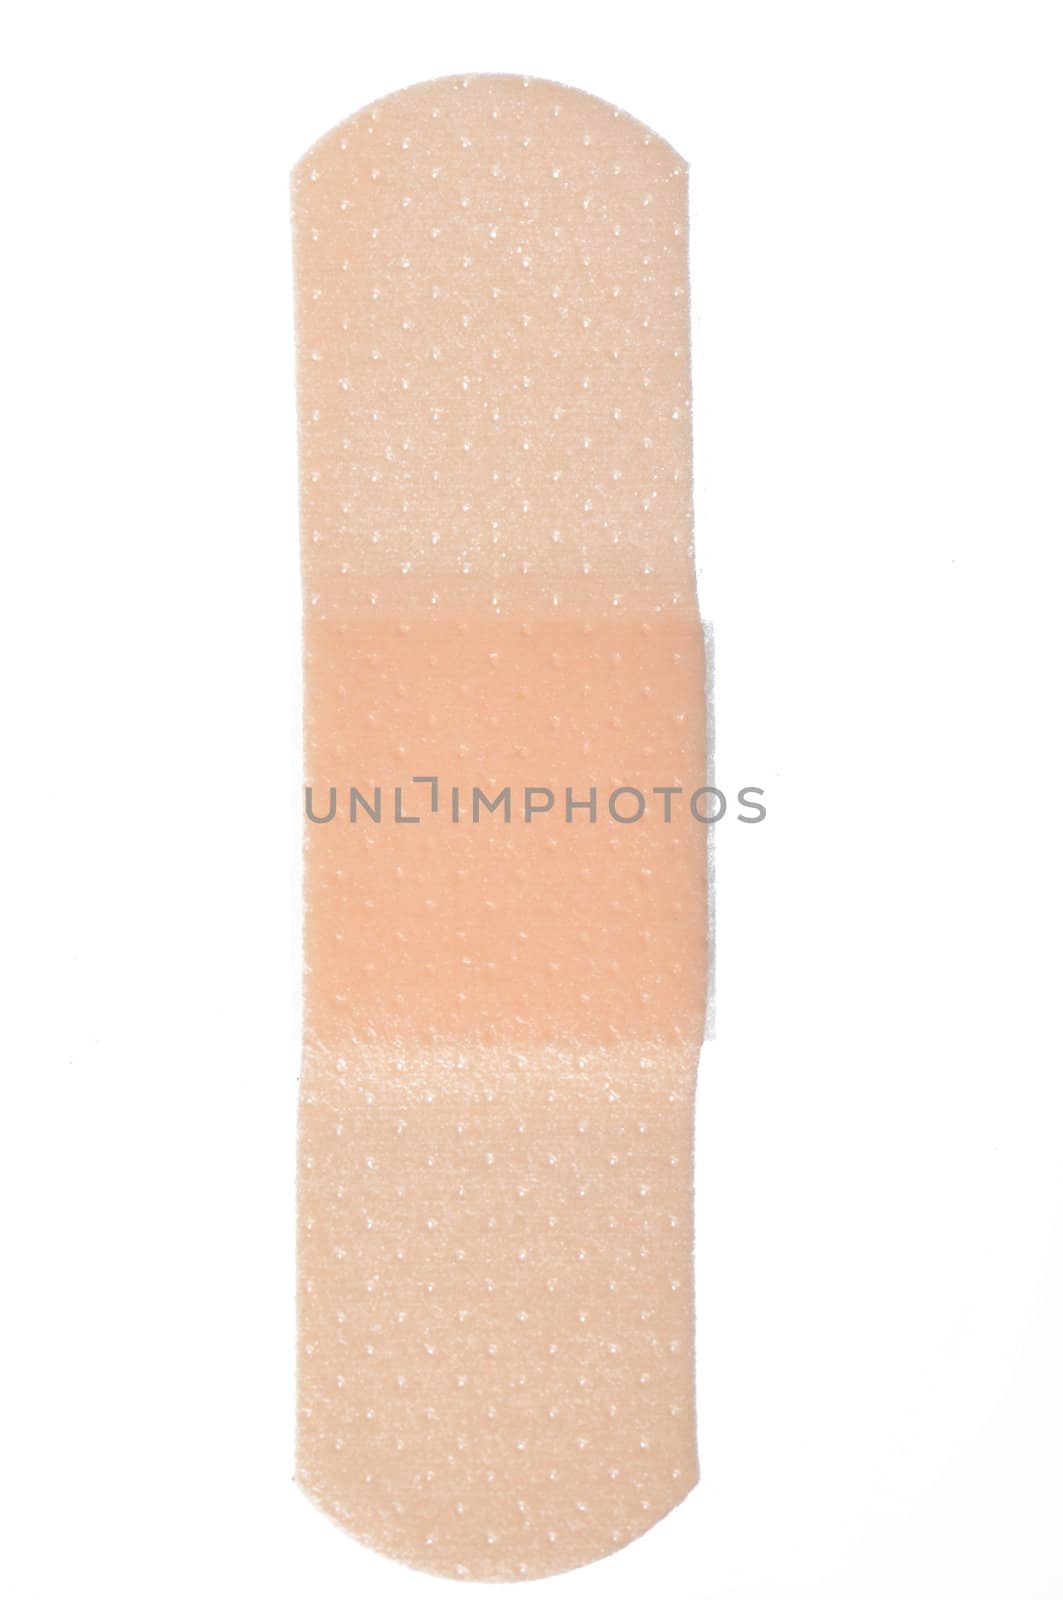 adhesive bandage isolated on a white background